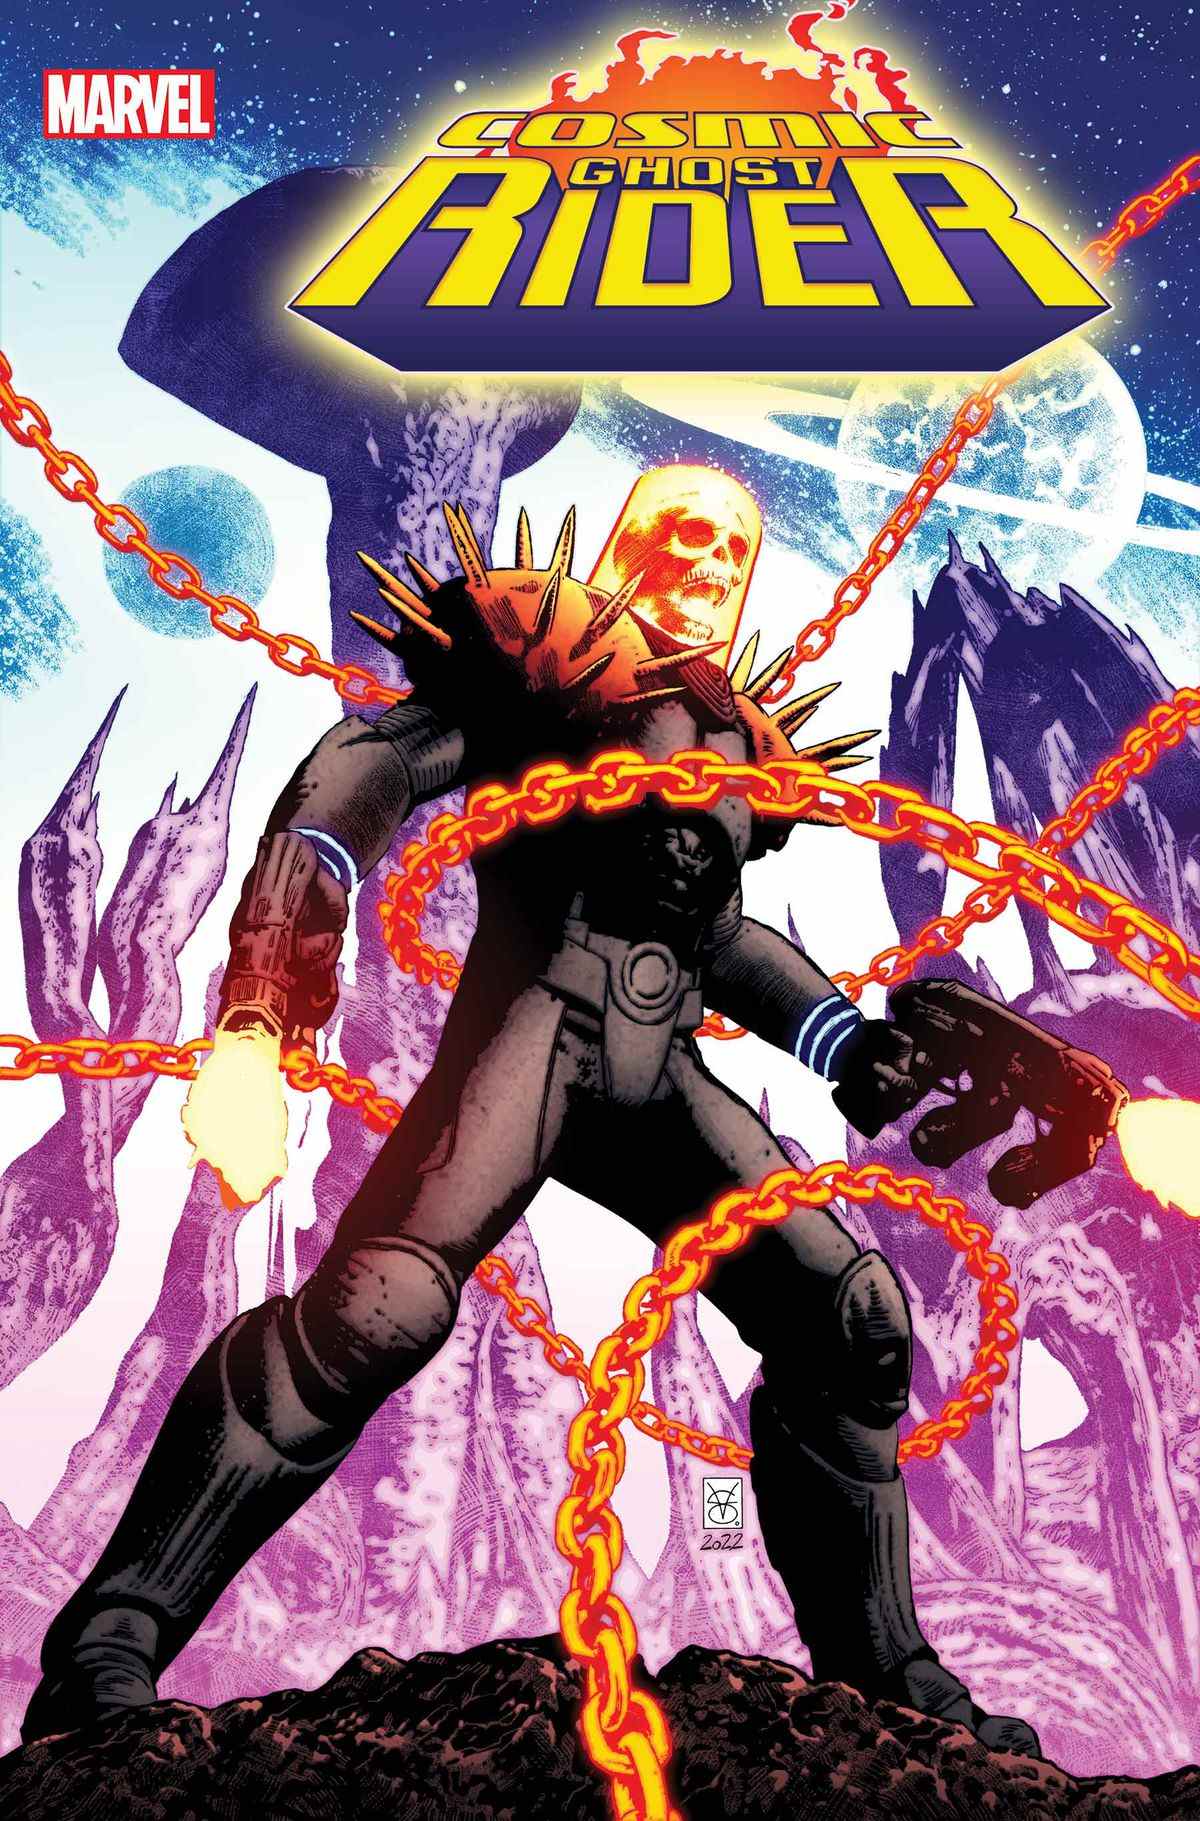 Le Cosmic Ghost Rider tire avec ses armes tandis que des chaînes l'enveloppent sur la couverture de Cosmic Ghost Rider # 1 (2023).